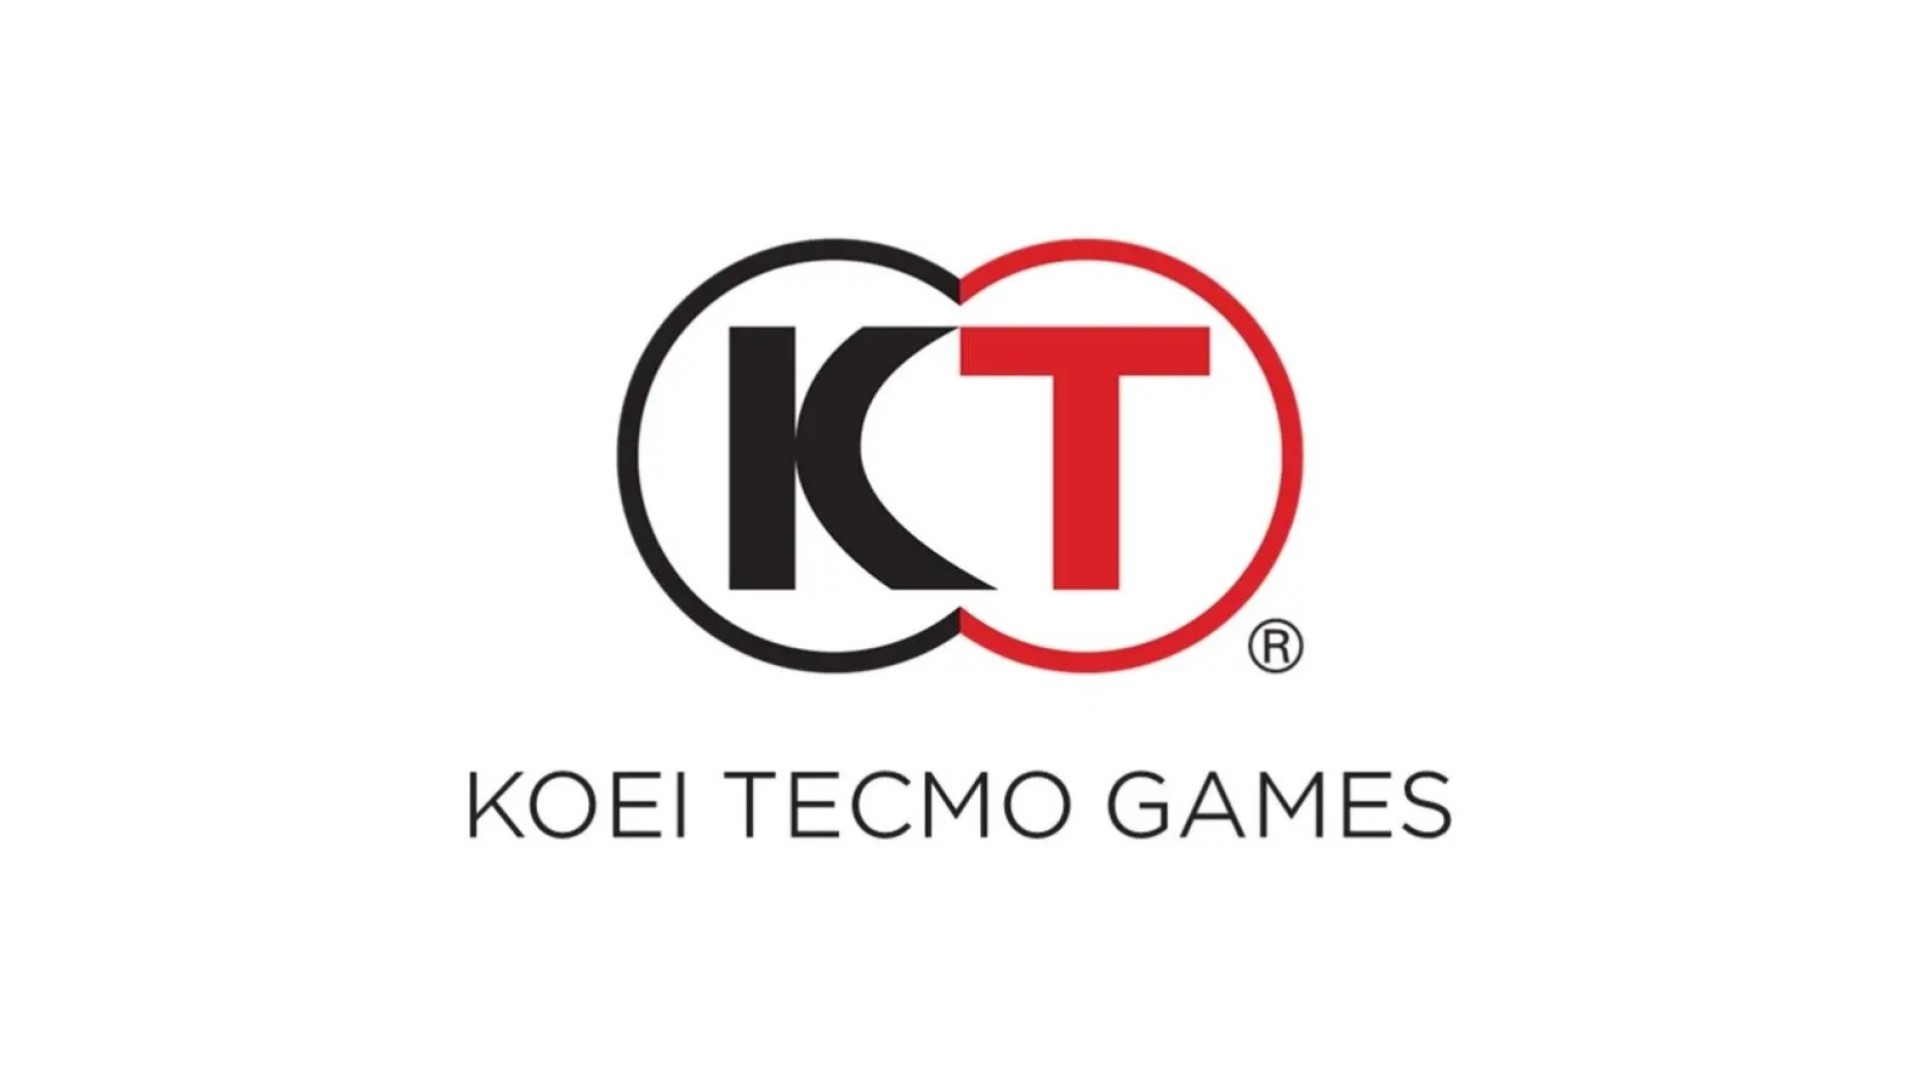 Koei Tecmo kündigt die Gründung eines neuen Studios an, der Name wurde noch nicht bekannt gegeben